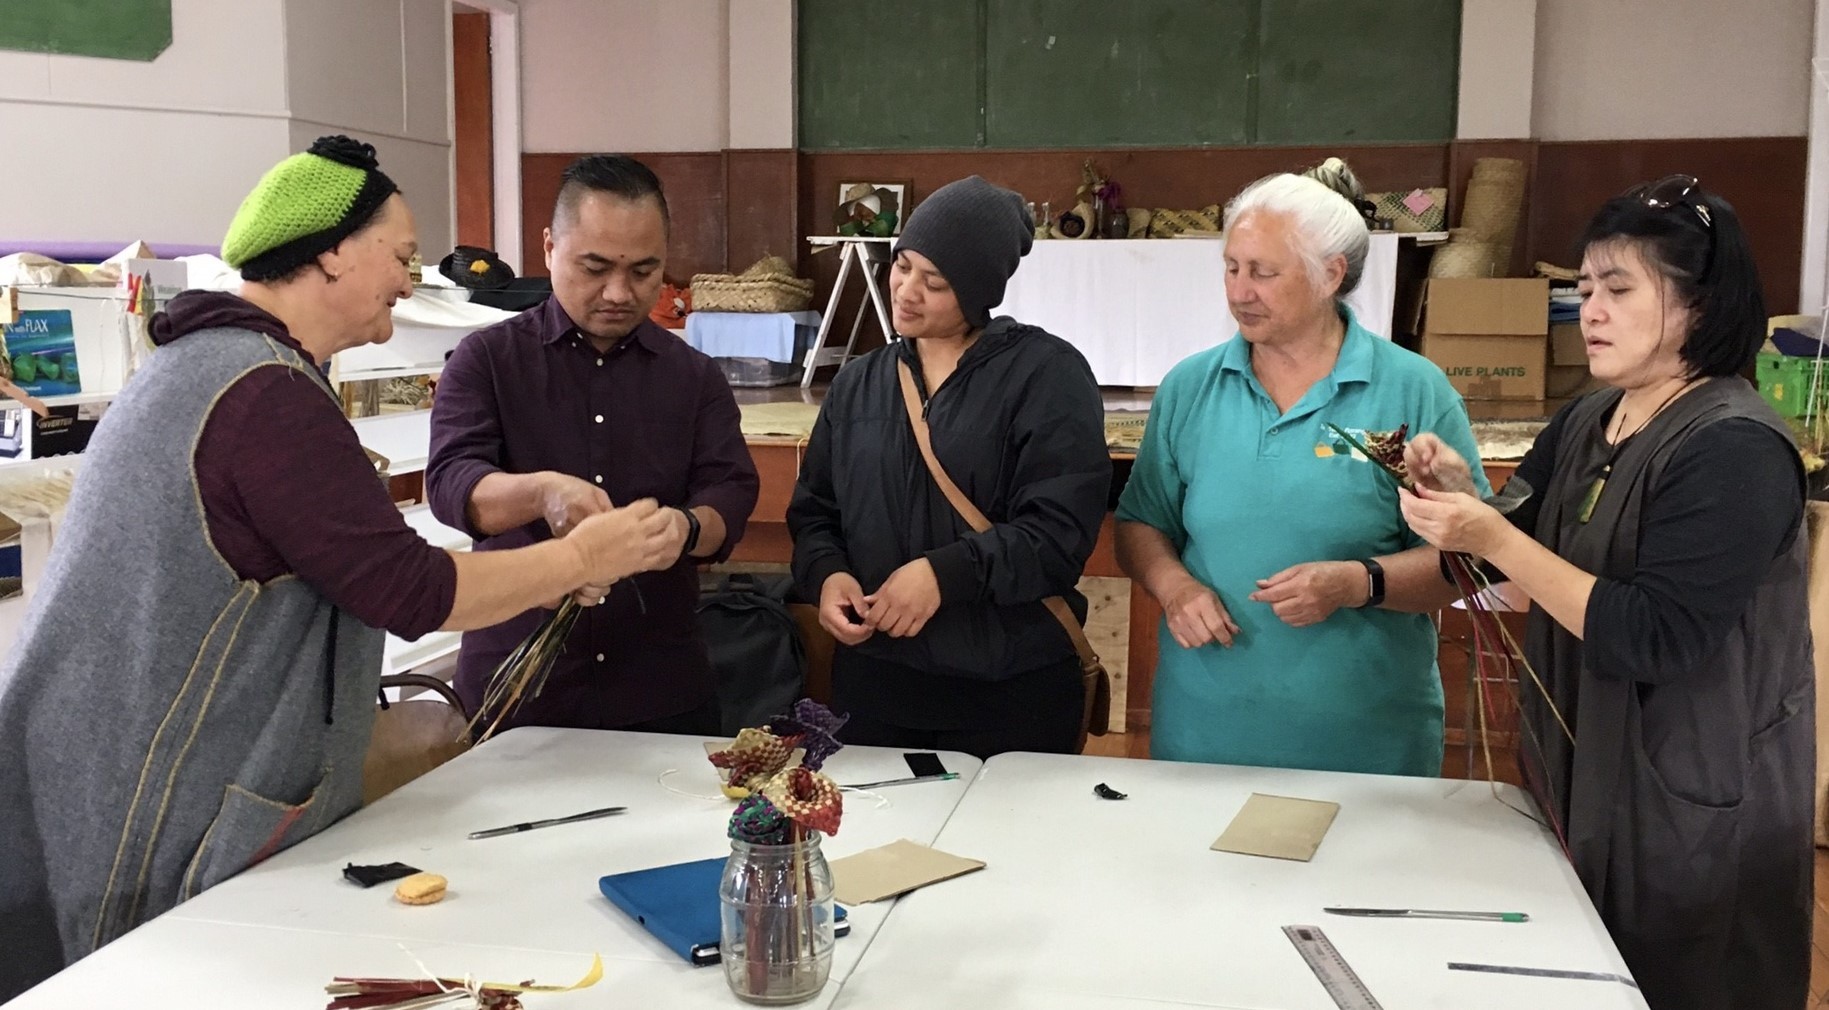 前往社區活動中心編織工坊學習傳統植物編織